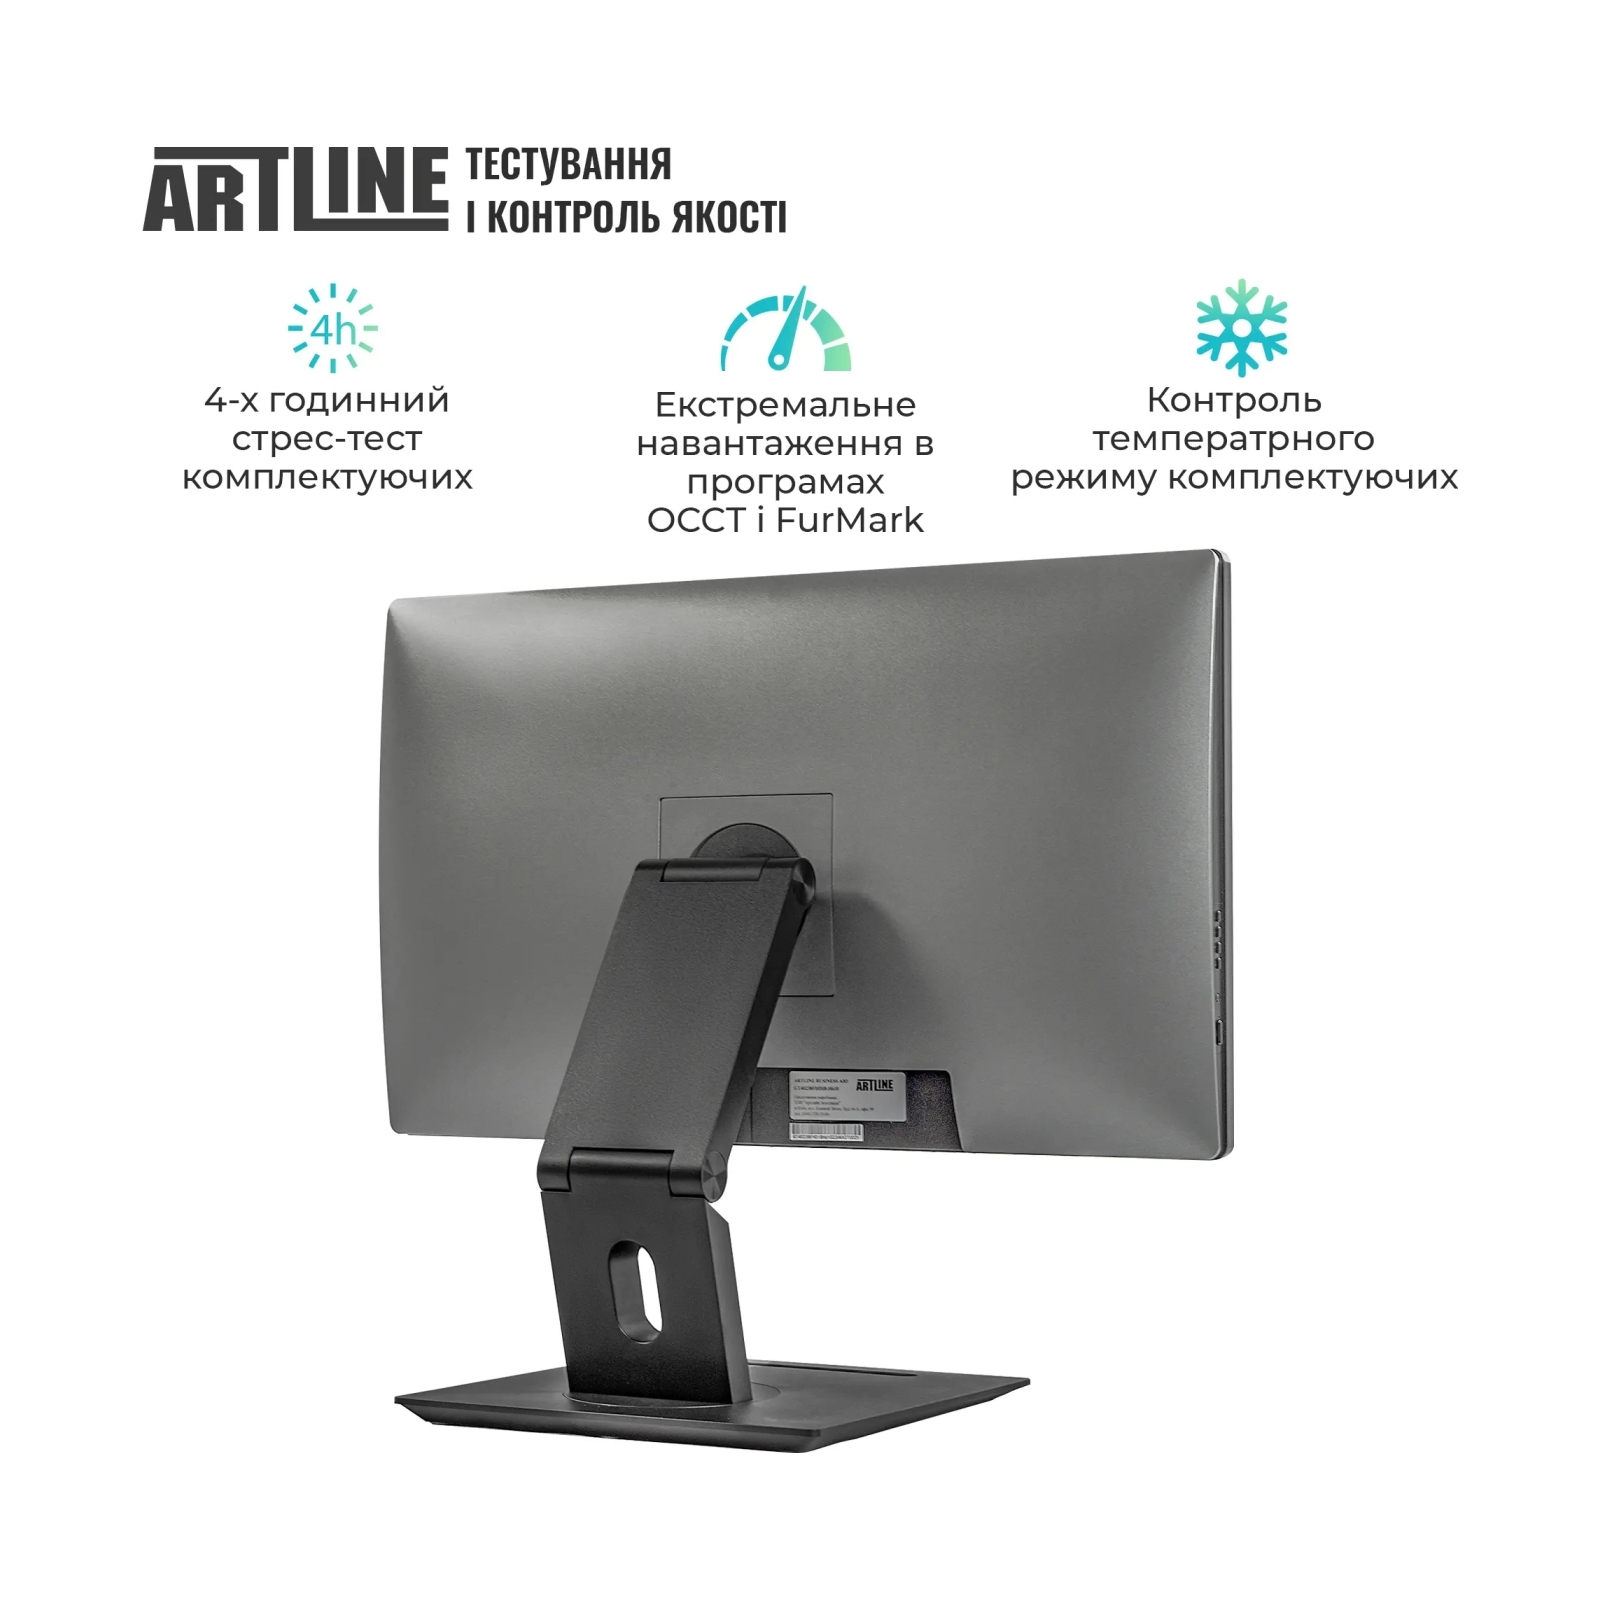 Компьютер Artline Business GT41 (GT41v01) изображение 8